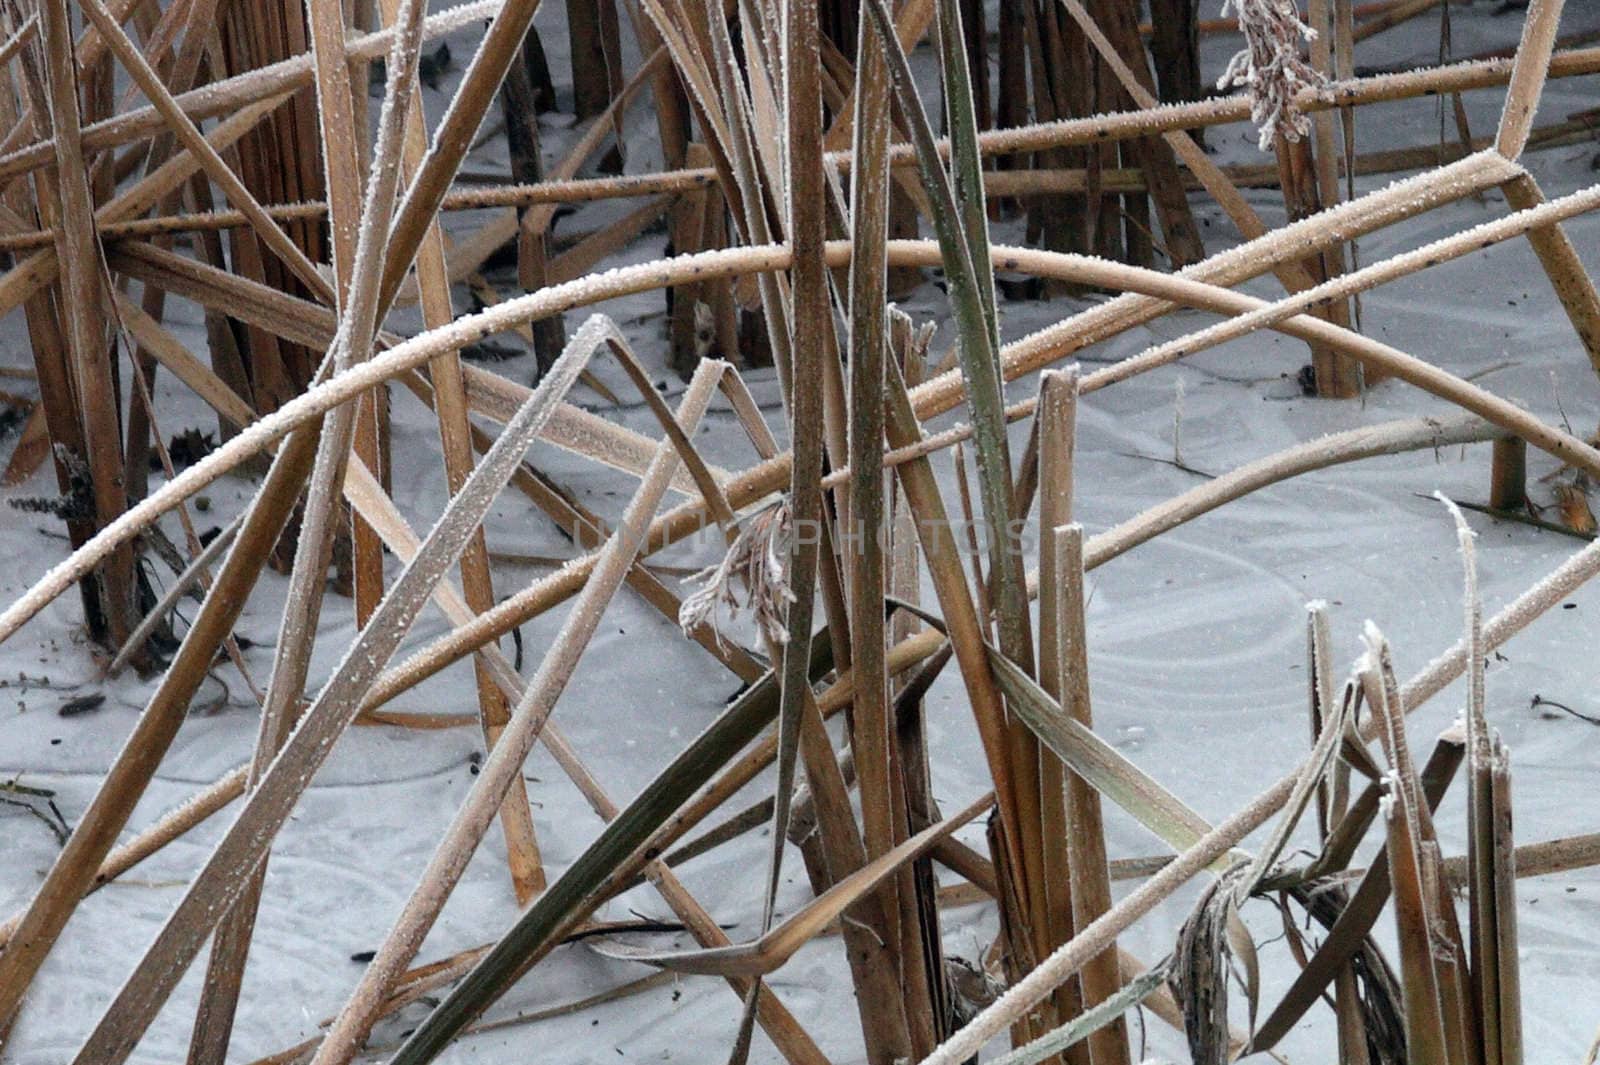 Frozen Reeds.  Photo taken in Culver, OR.